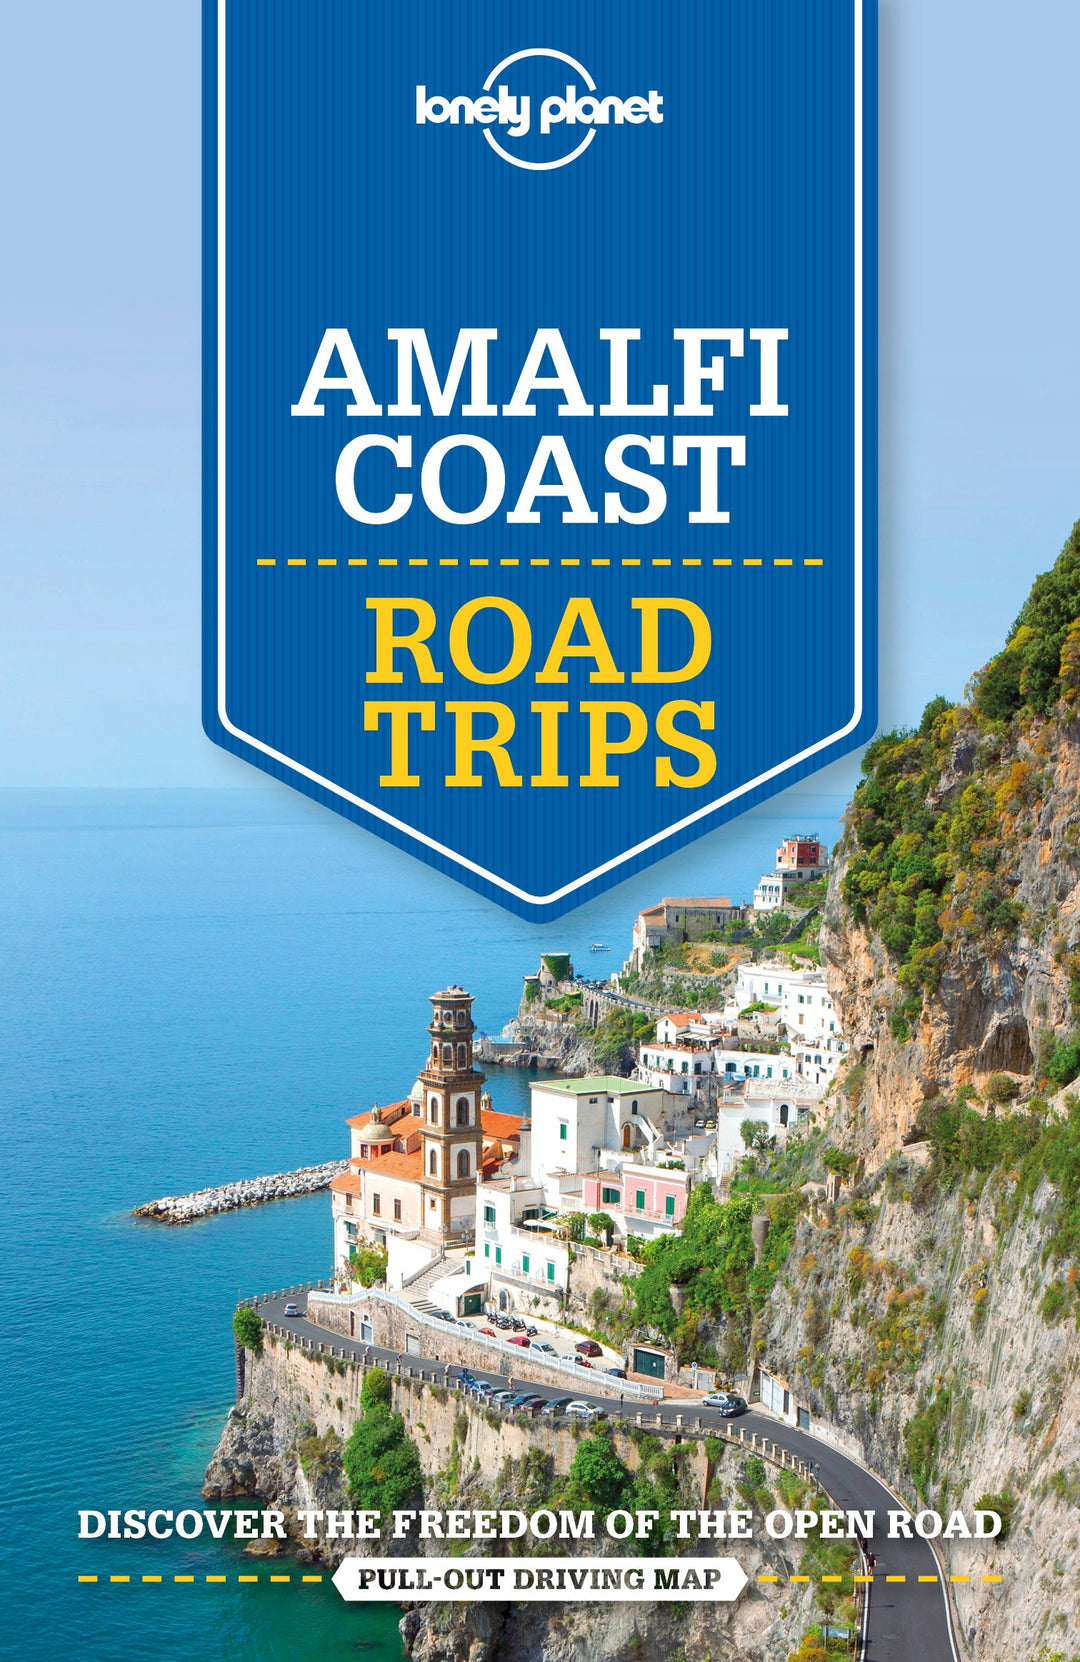 Road trip (en anglais) - Amalfi Coast | Lonely Planet guide de voyage Lonely Planet 